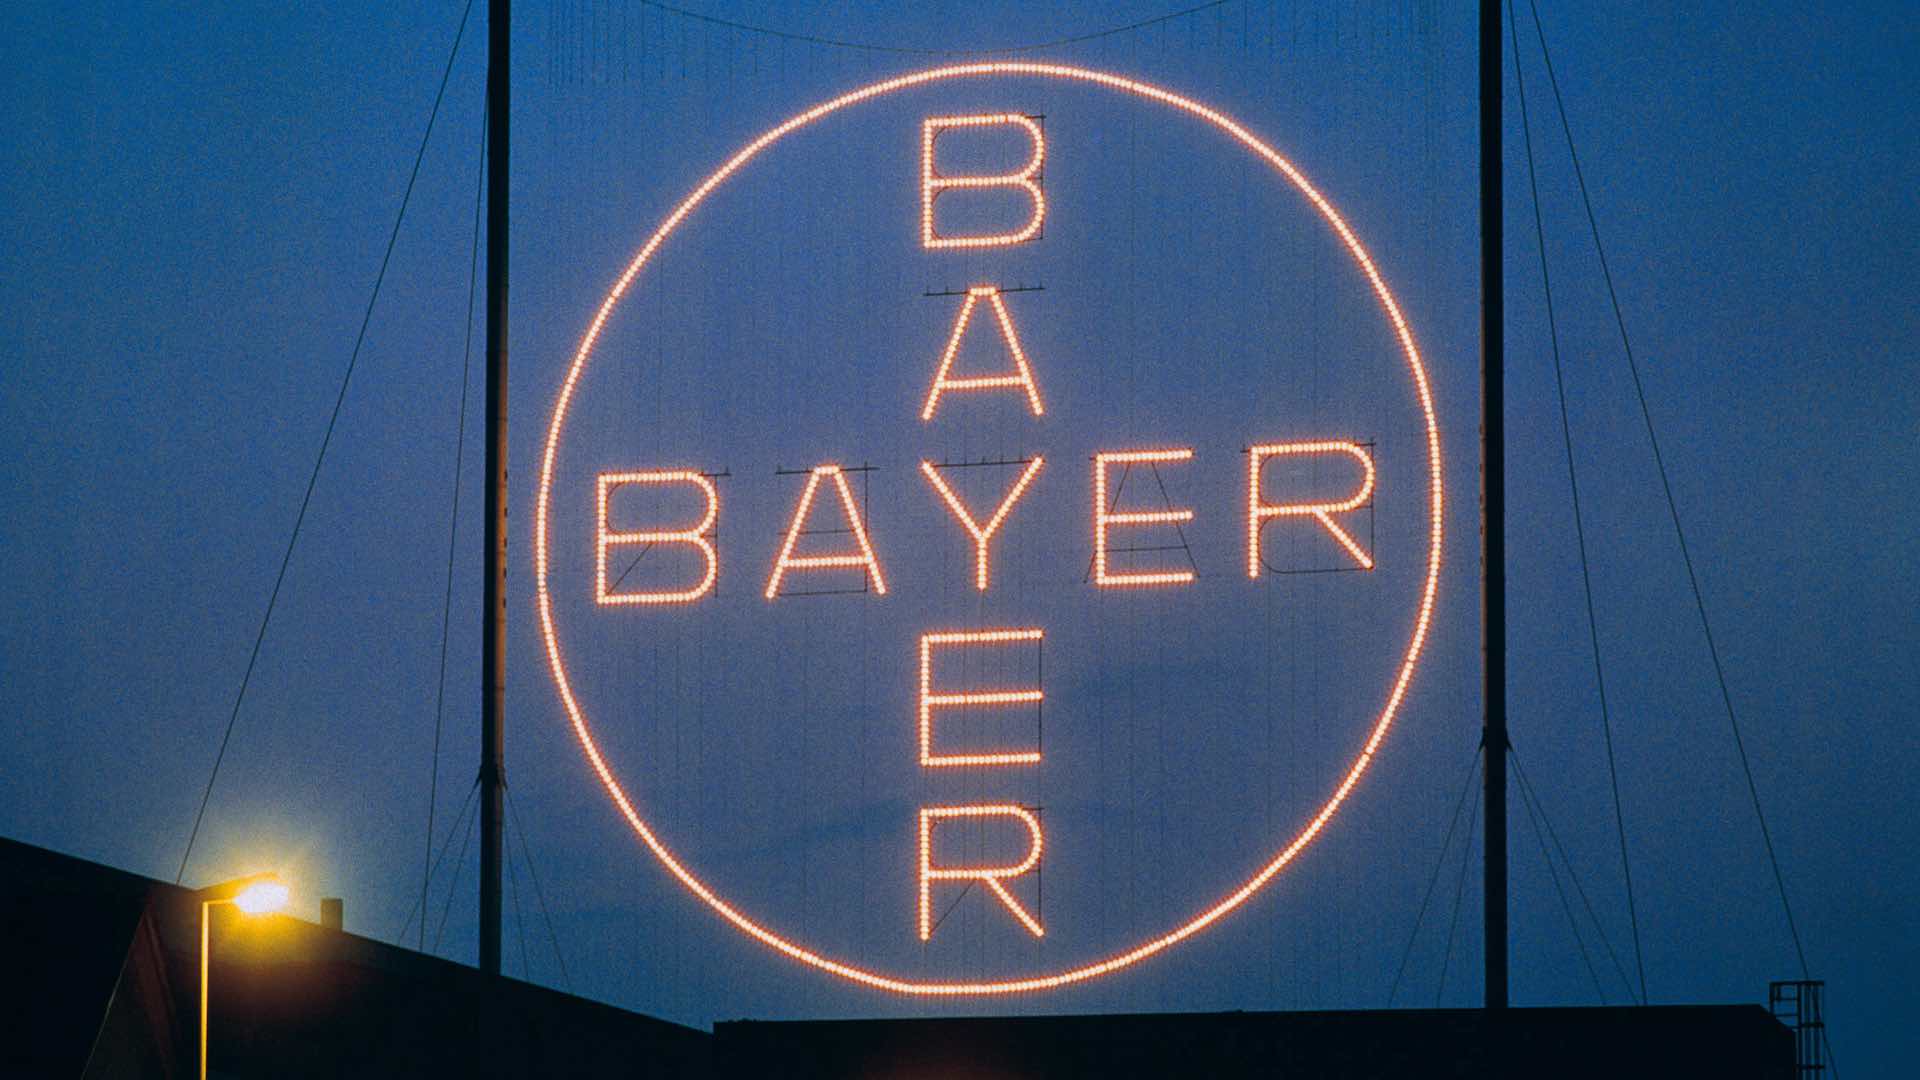 Bayer risque une lourde amende de 1,56 milliard de dollars dans le cadre du procès contre le cancer du Roundup